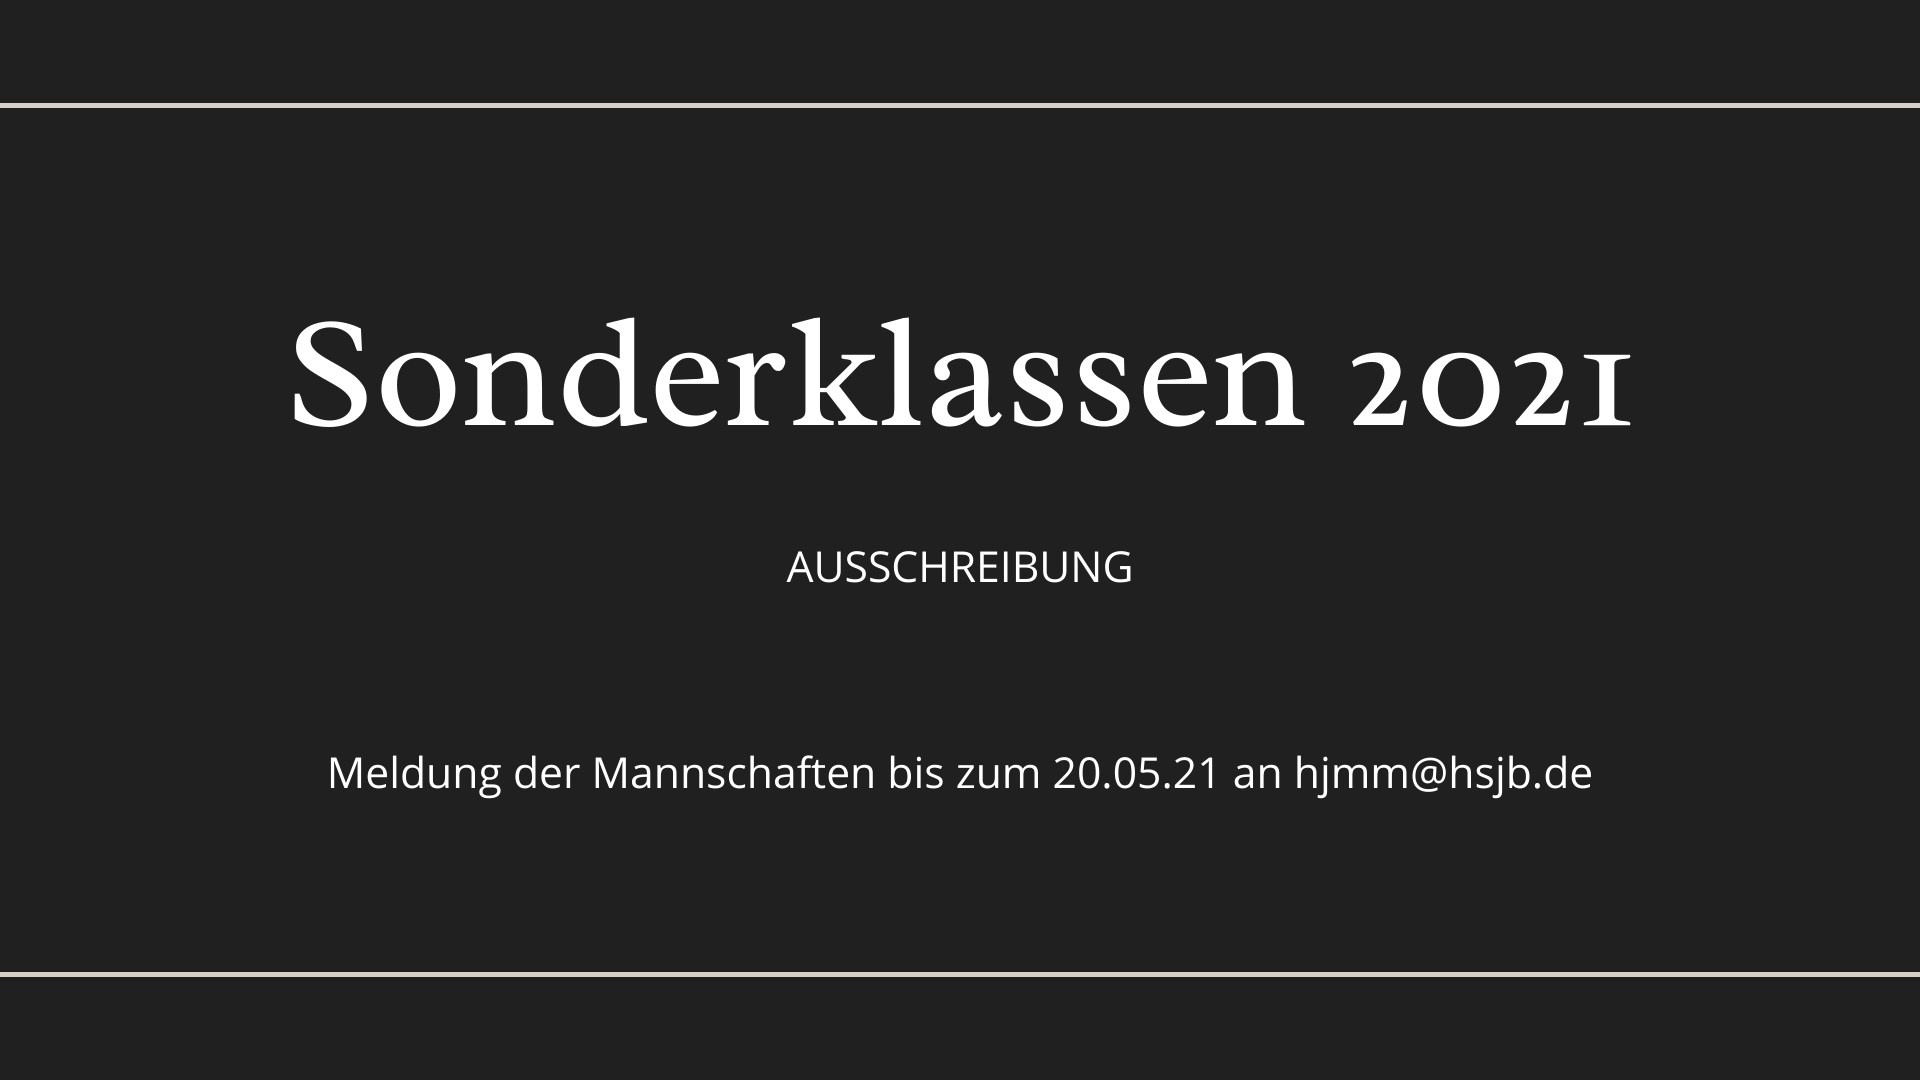 You are currently viewing Sonderklassen 2021 – Ausschreibung